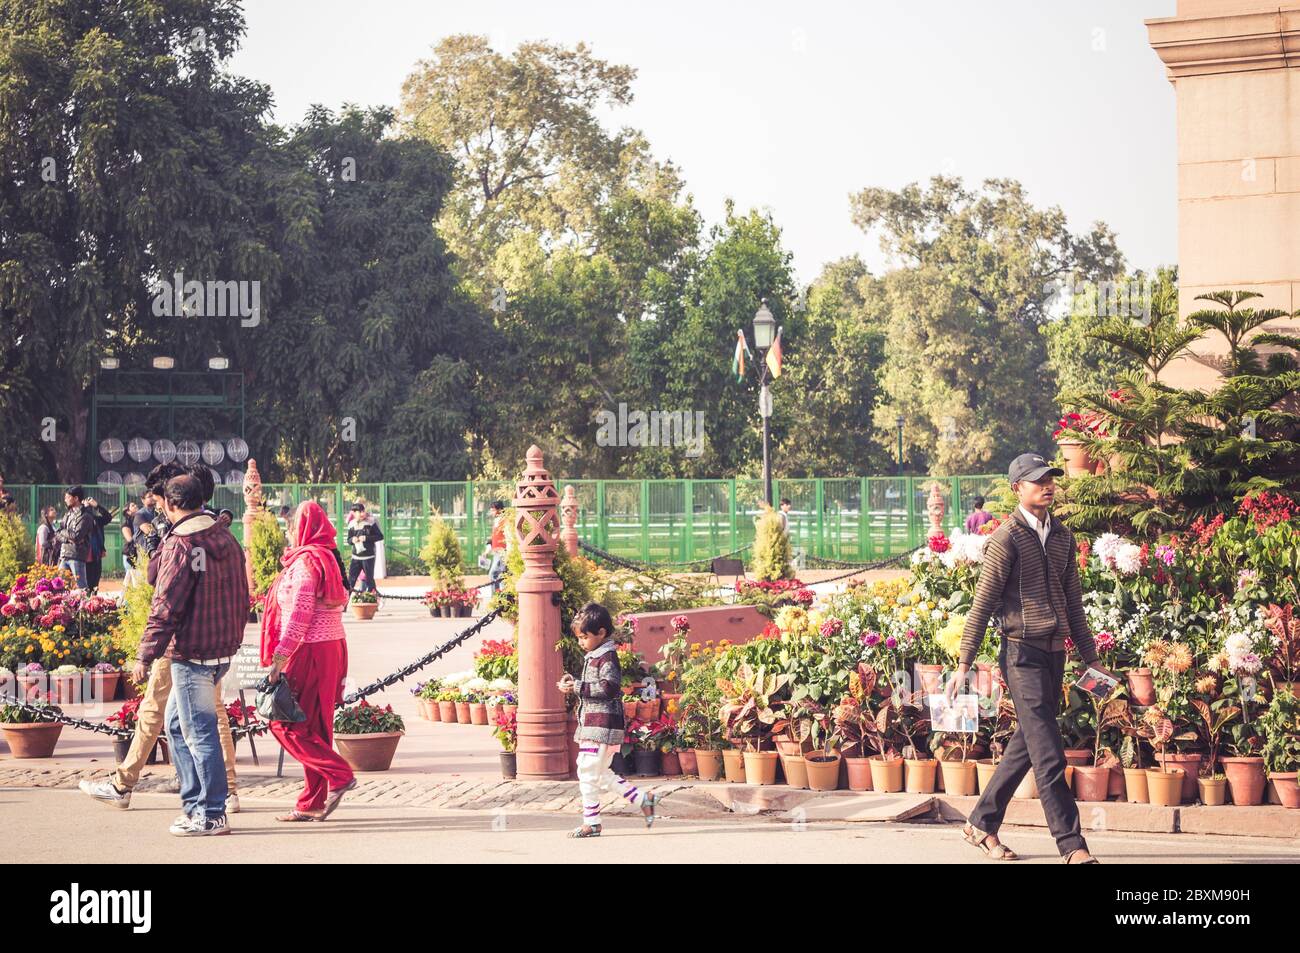 DELHI, INDE - 05 FÉVRIER 2014 - les Indiens marchant près de la porte de l'Inde à Delhi, Inde. Heure d'or. Banque D'Images